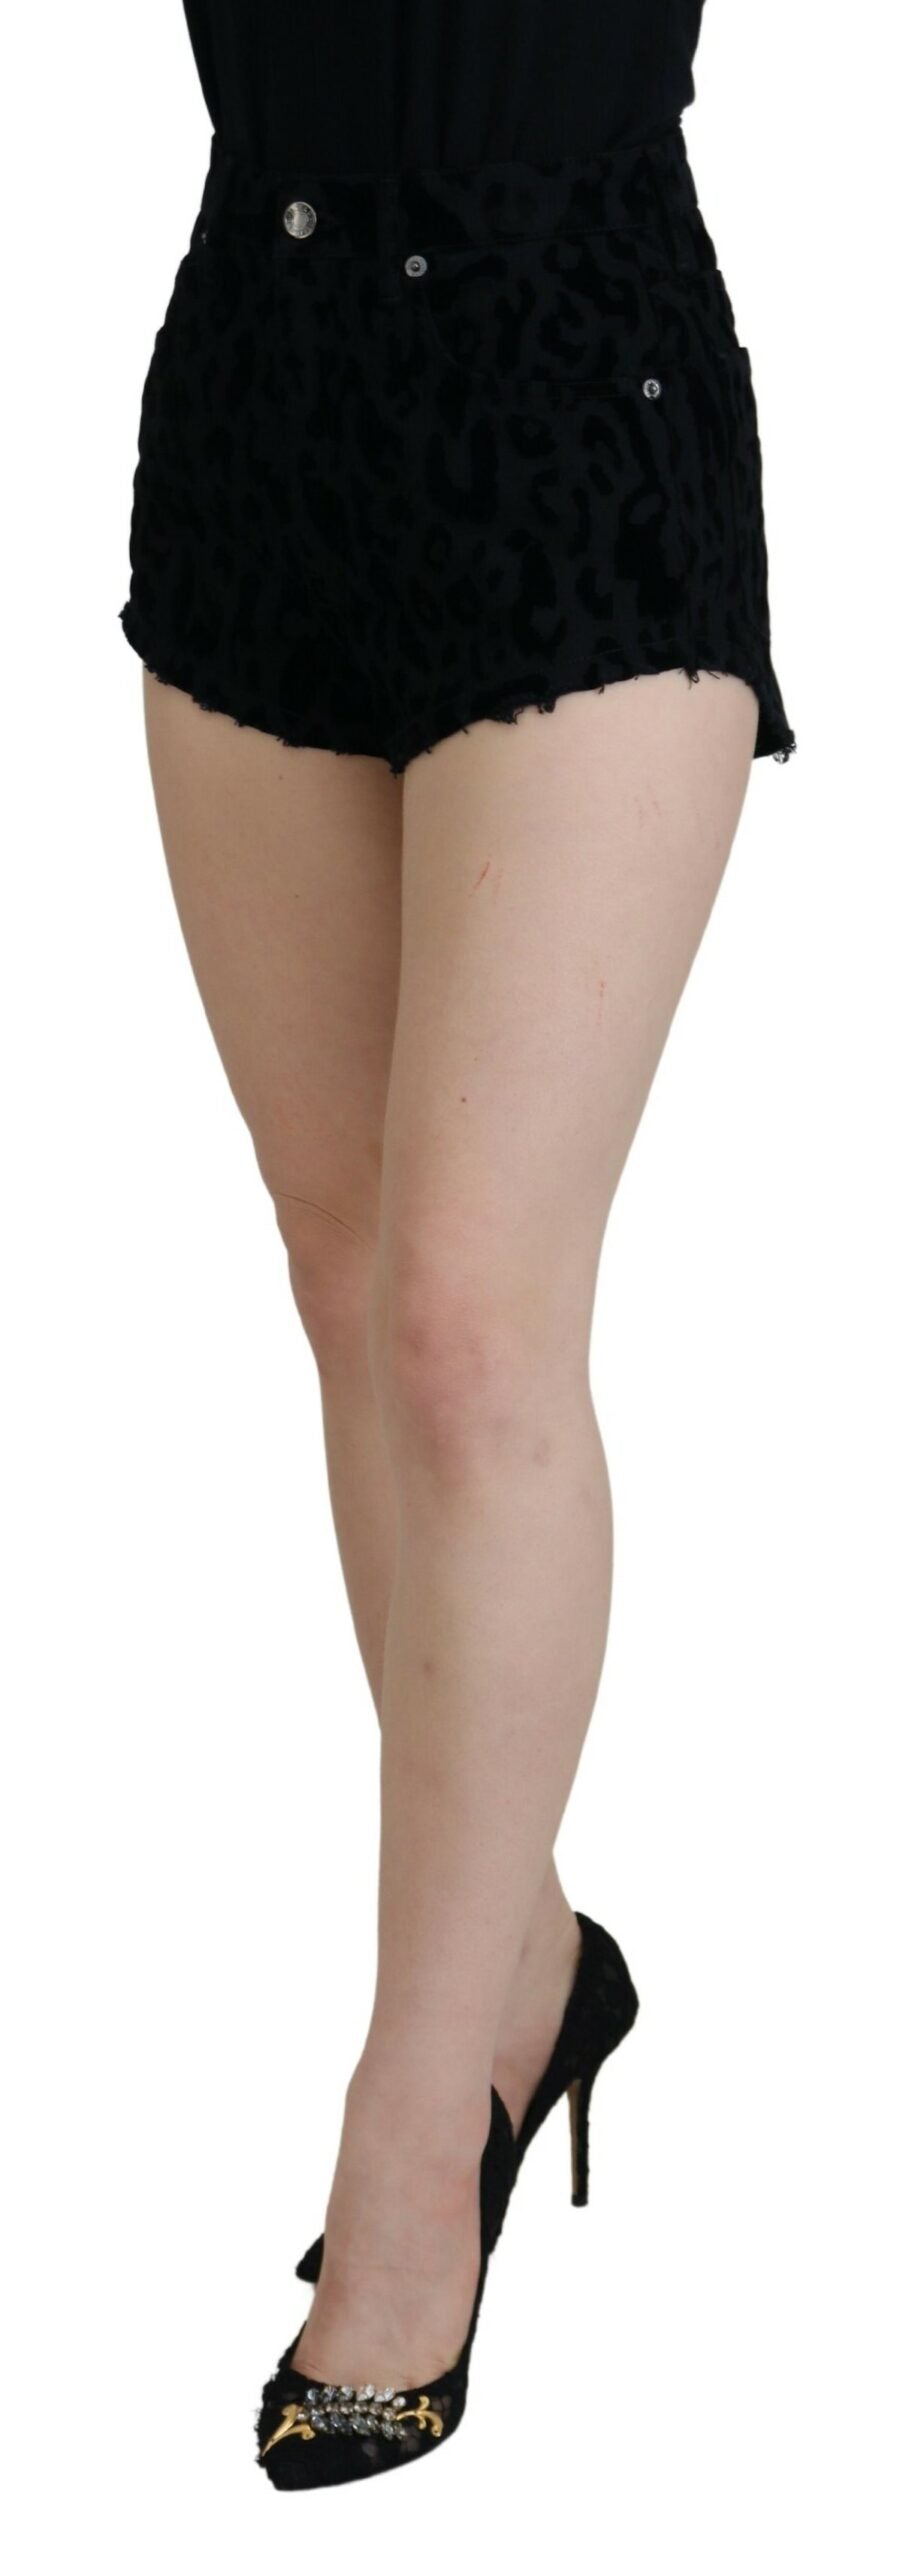 Dolce & Gabbana Elegant High Waist Denim Hot Pants Shorts